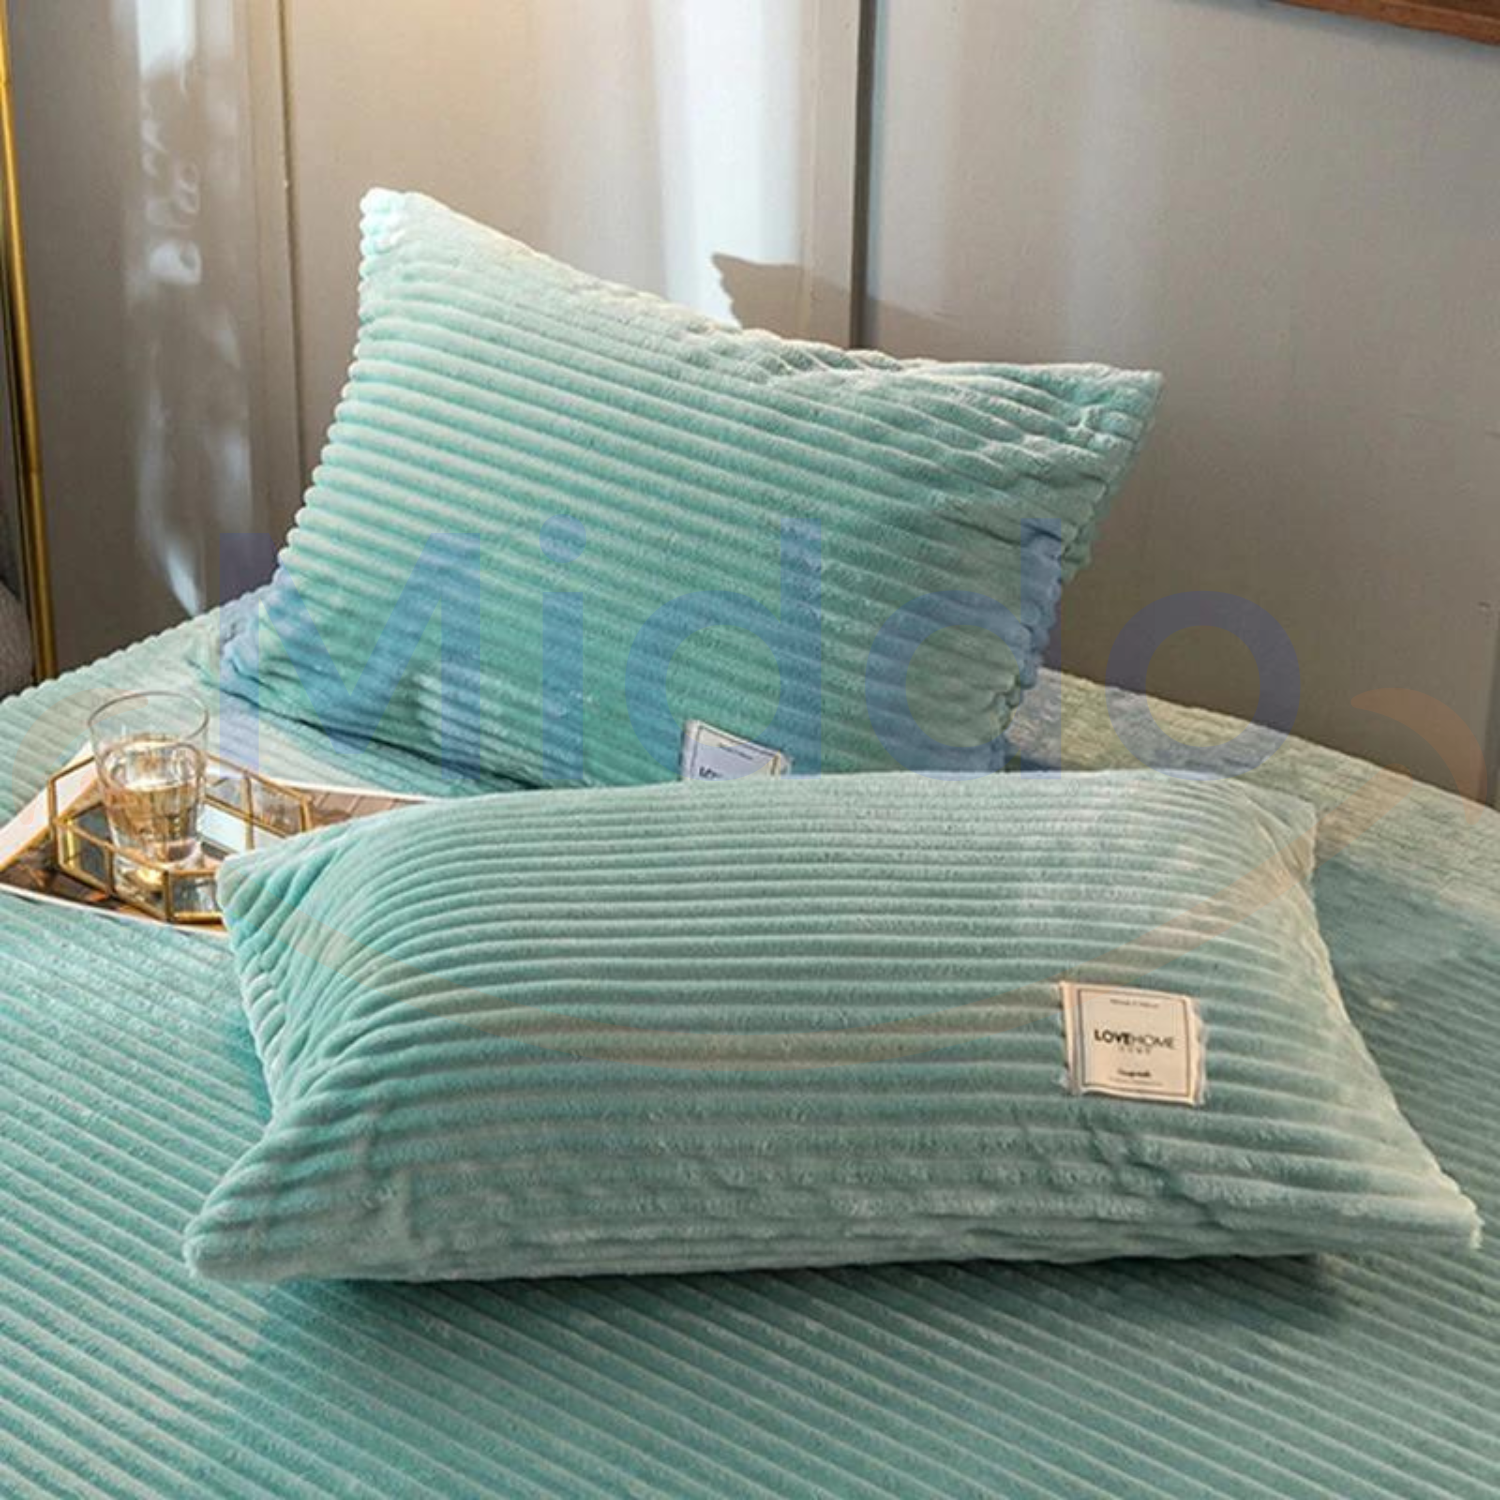 Jadegroene fluwelen fleece kussens op bed met glazen decoratie.